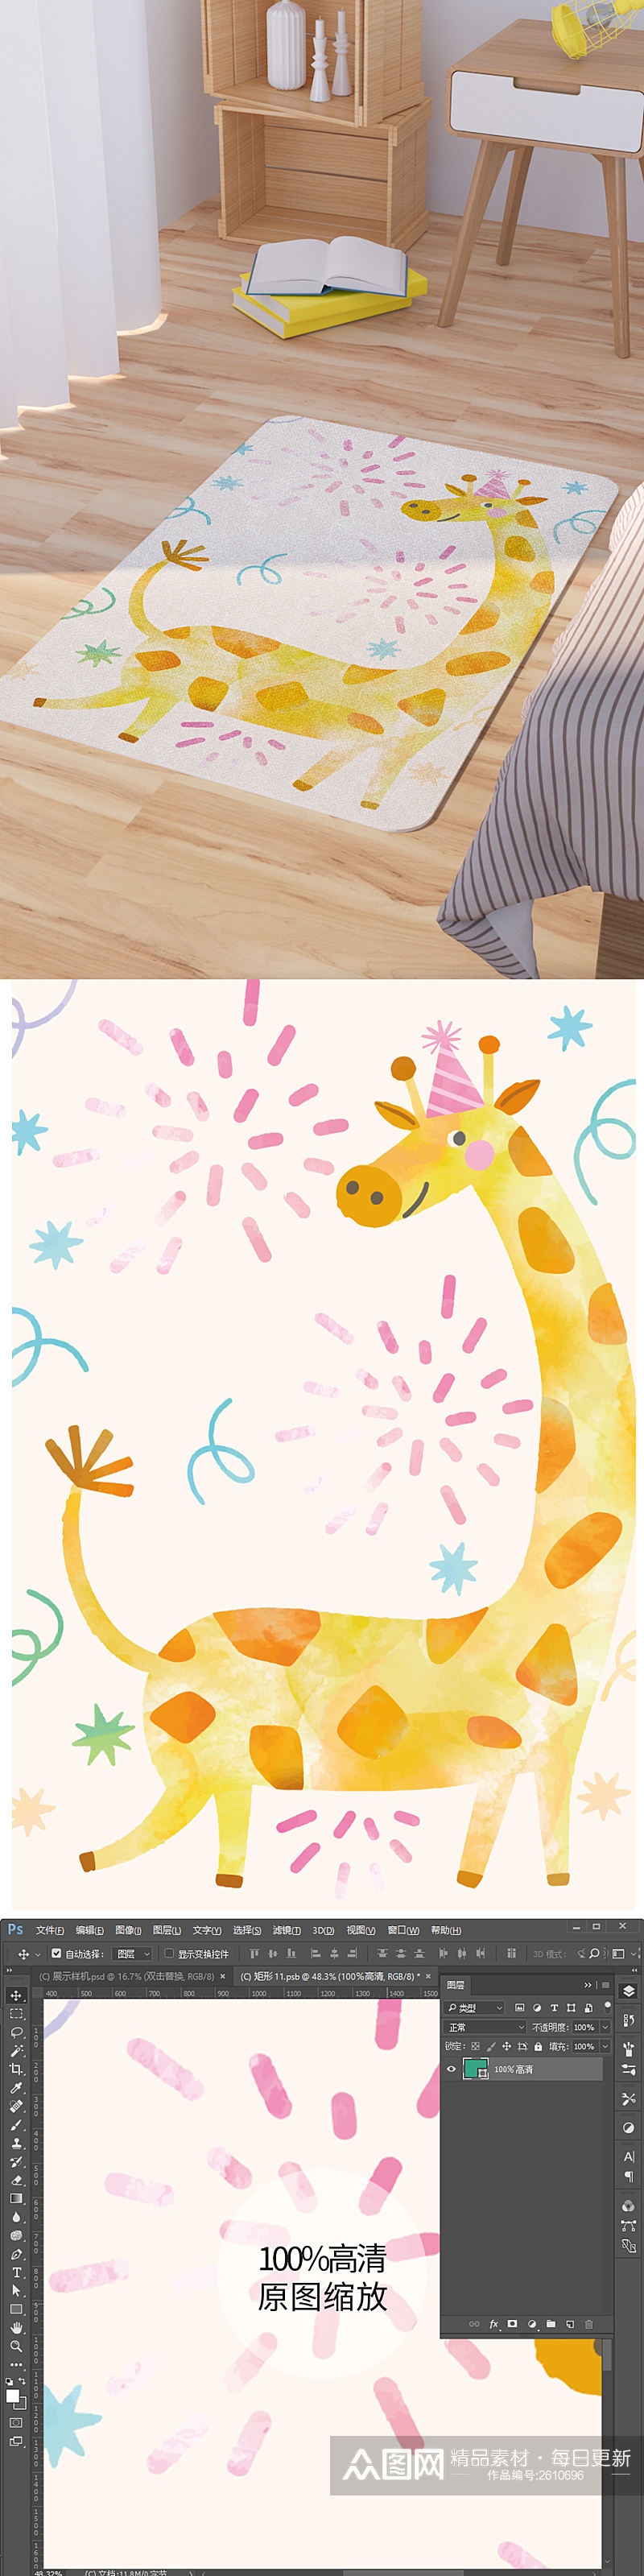 矢量手绘卡通可爱长颈鹿脚垫地毯图案素材